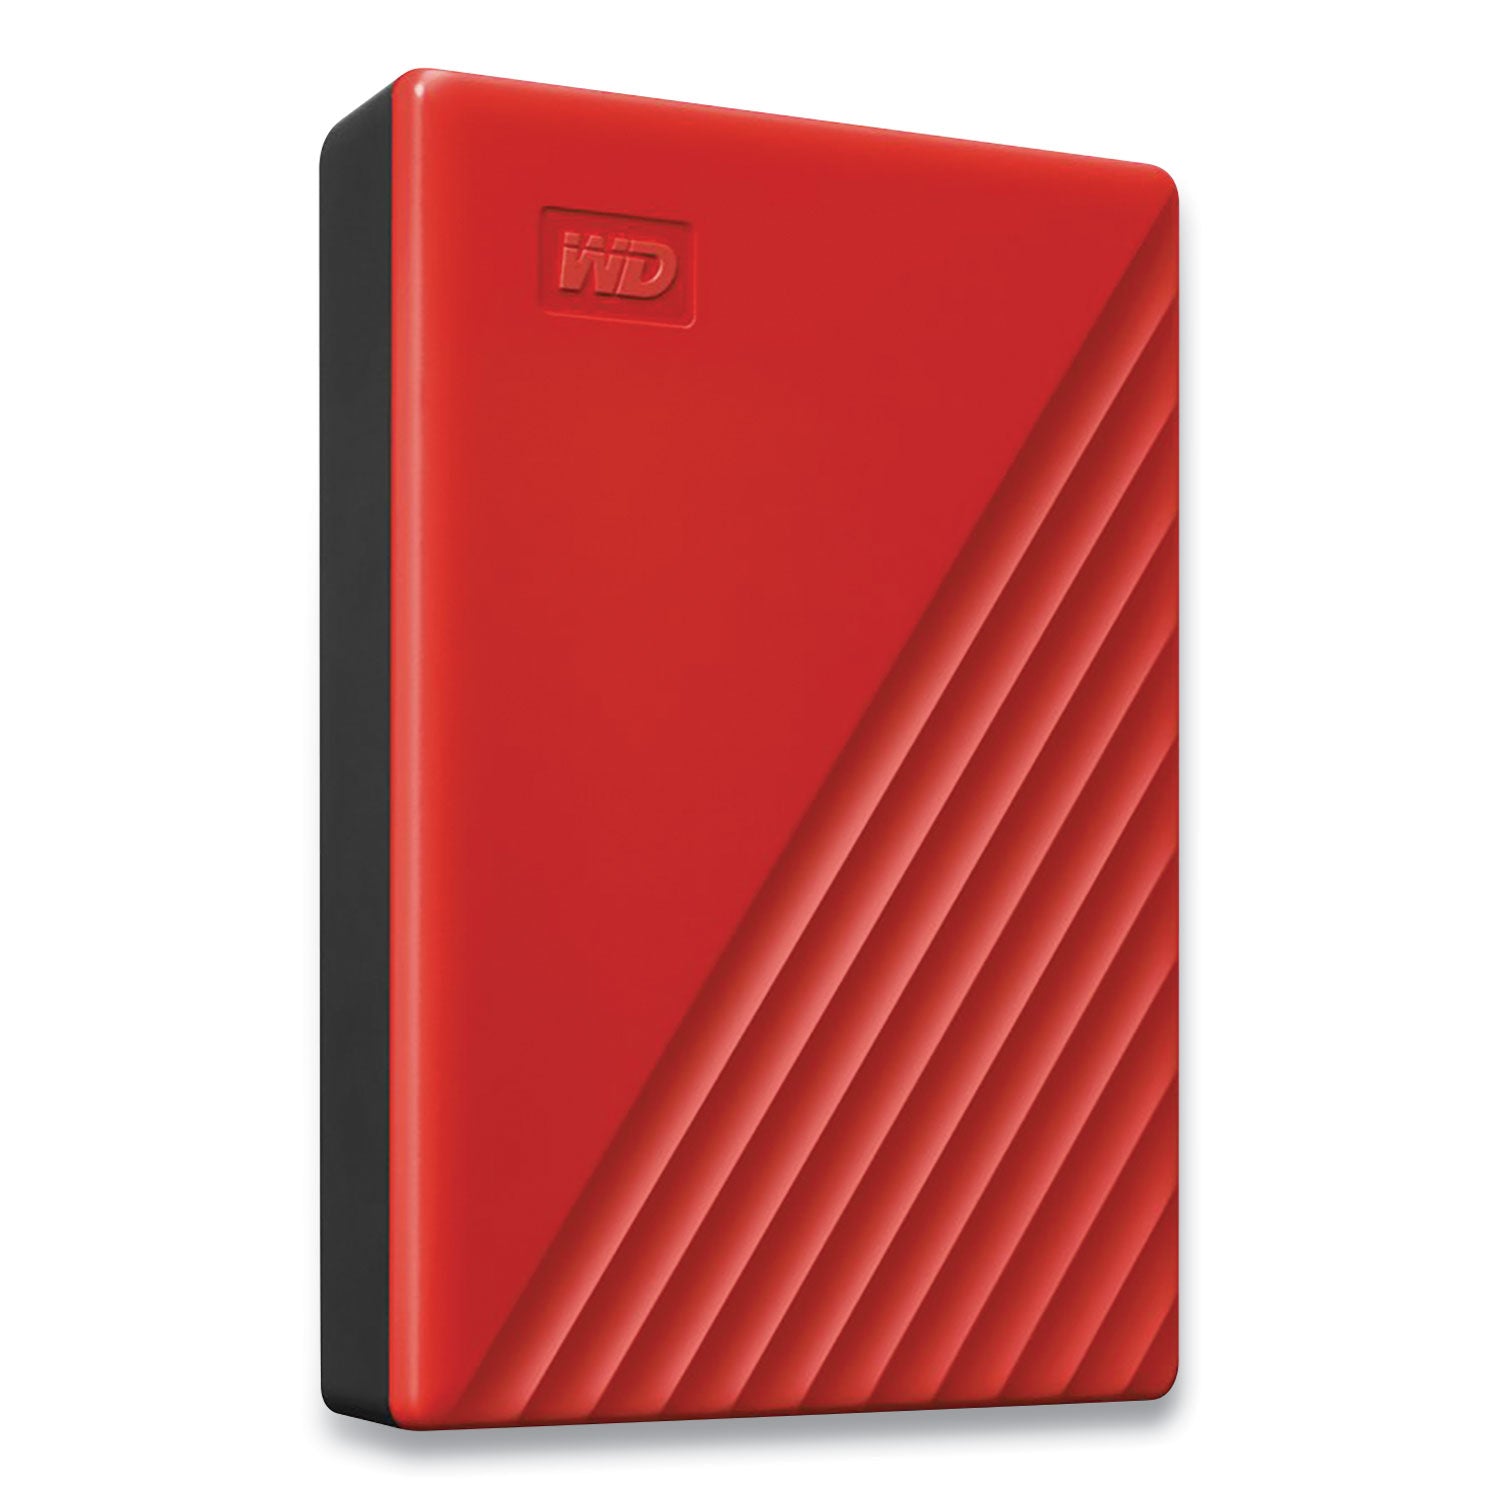 my-passport-external-hard-drive-4-tb-usb-32-red_wdcbpkj0040brd - 1